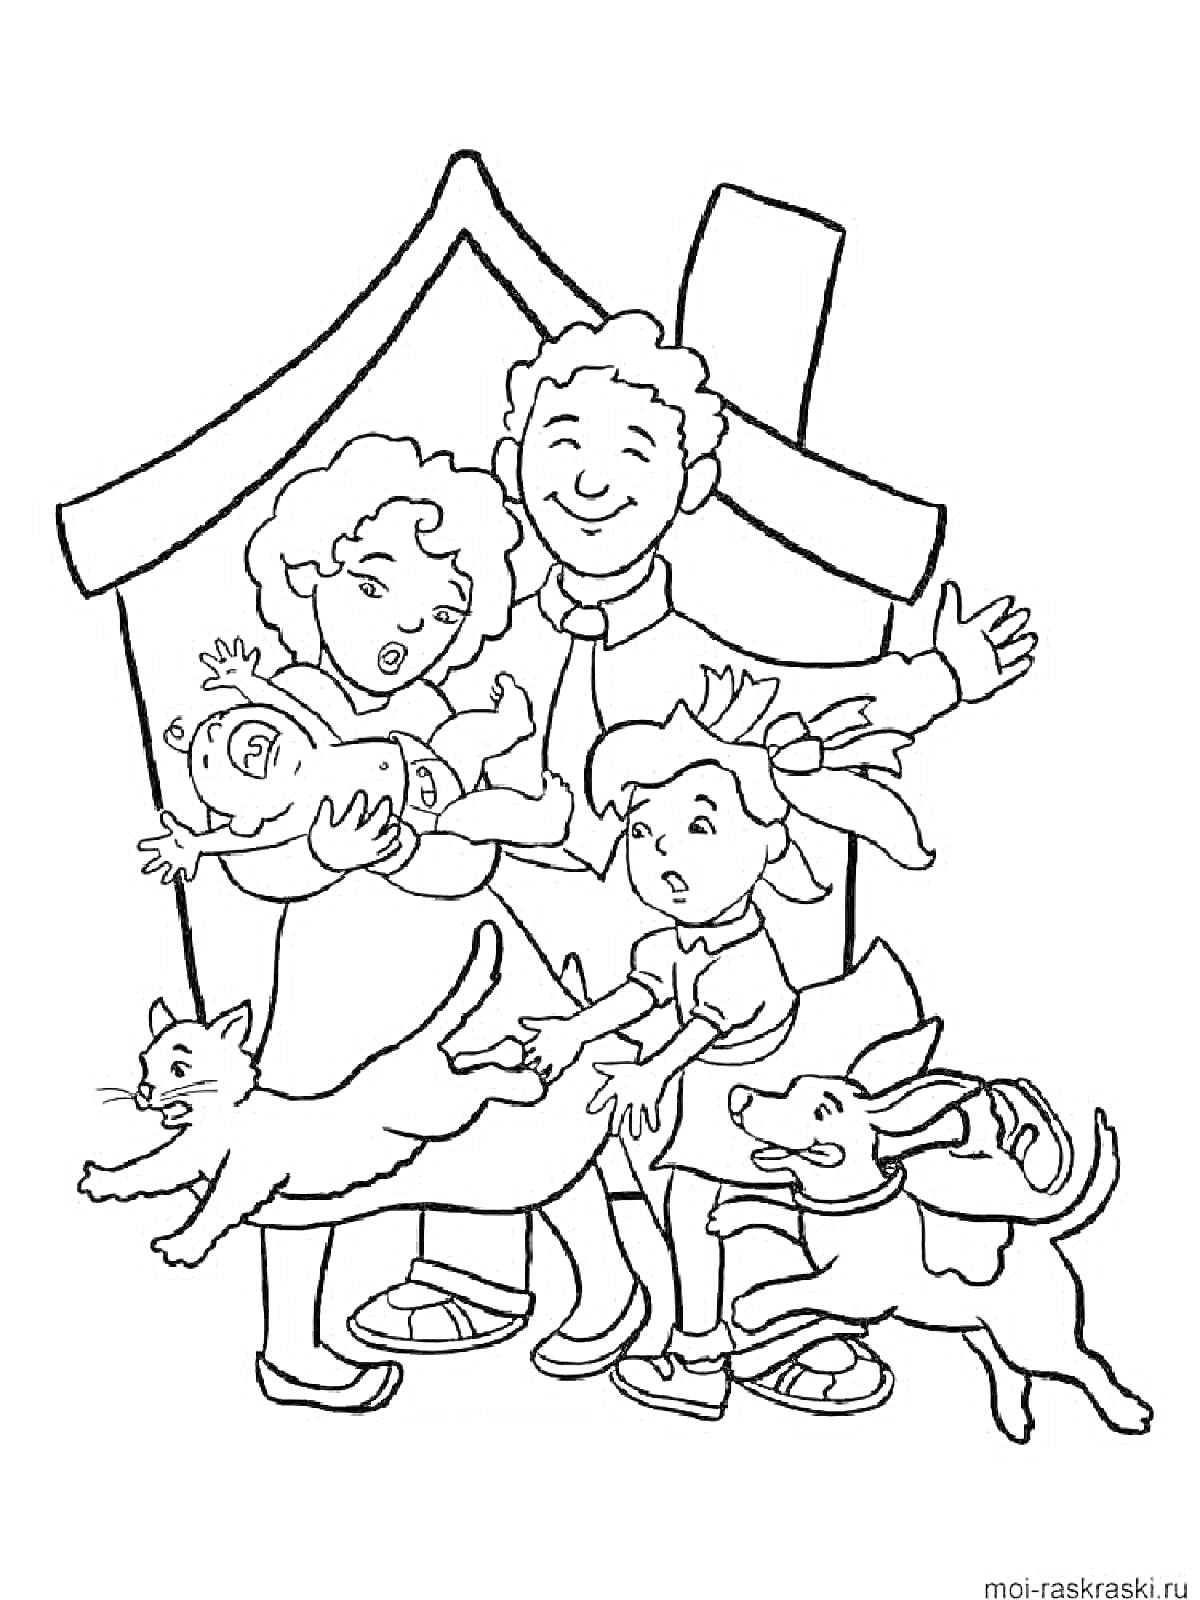 Раскраска Семейная сцена возле дома: родители с тремя детьми (один младенец на руках), собака и кошка